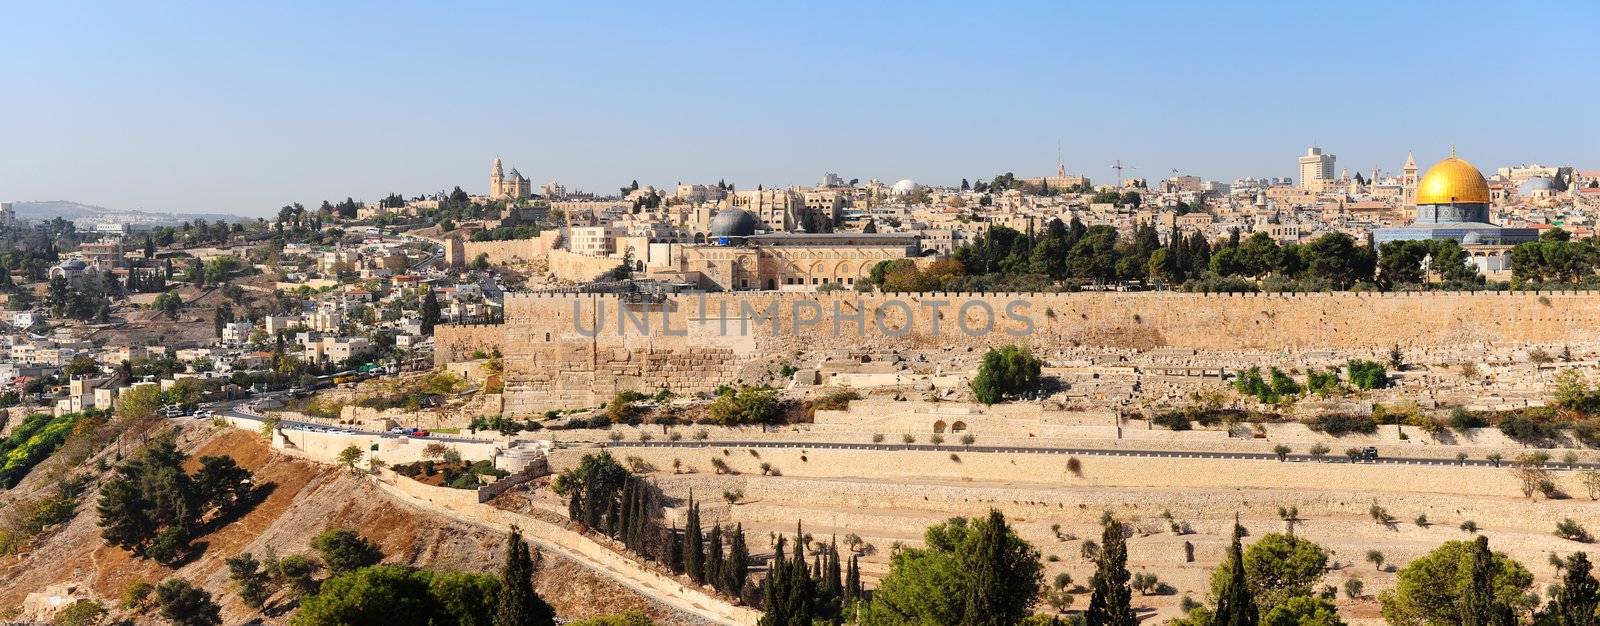 Panorama of Jerusalem by gkuna